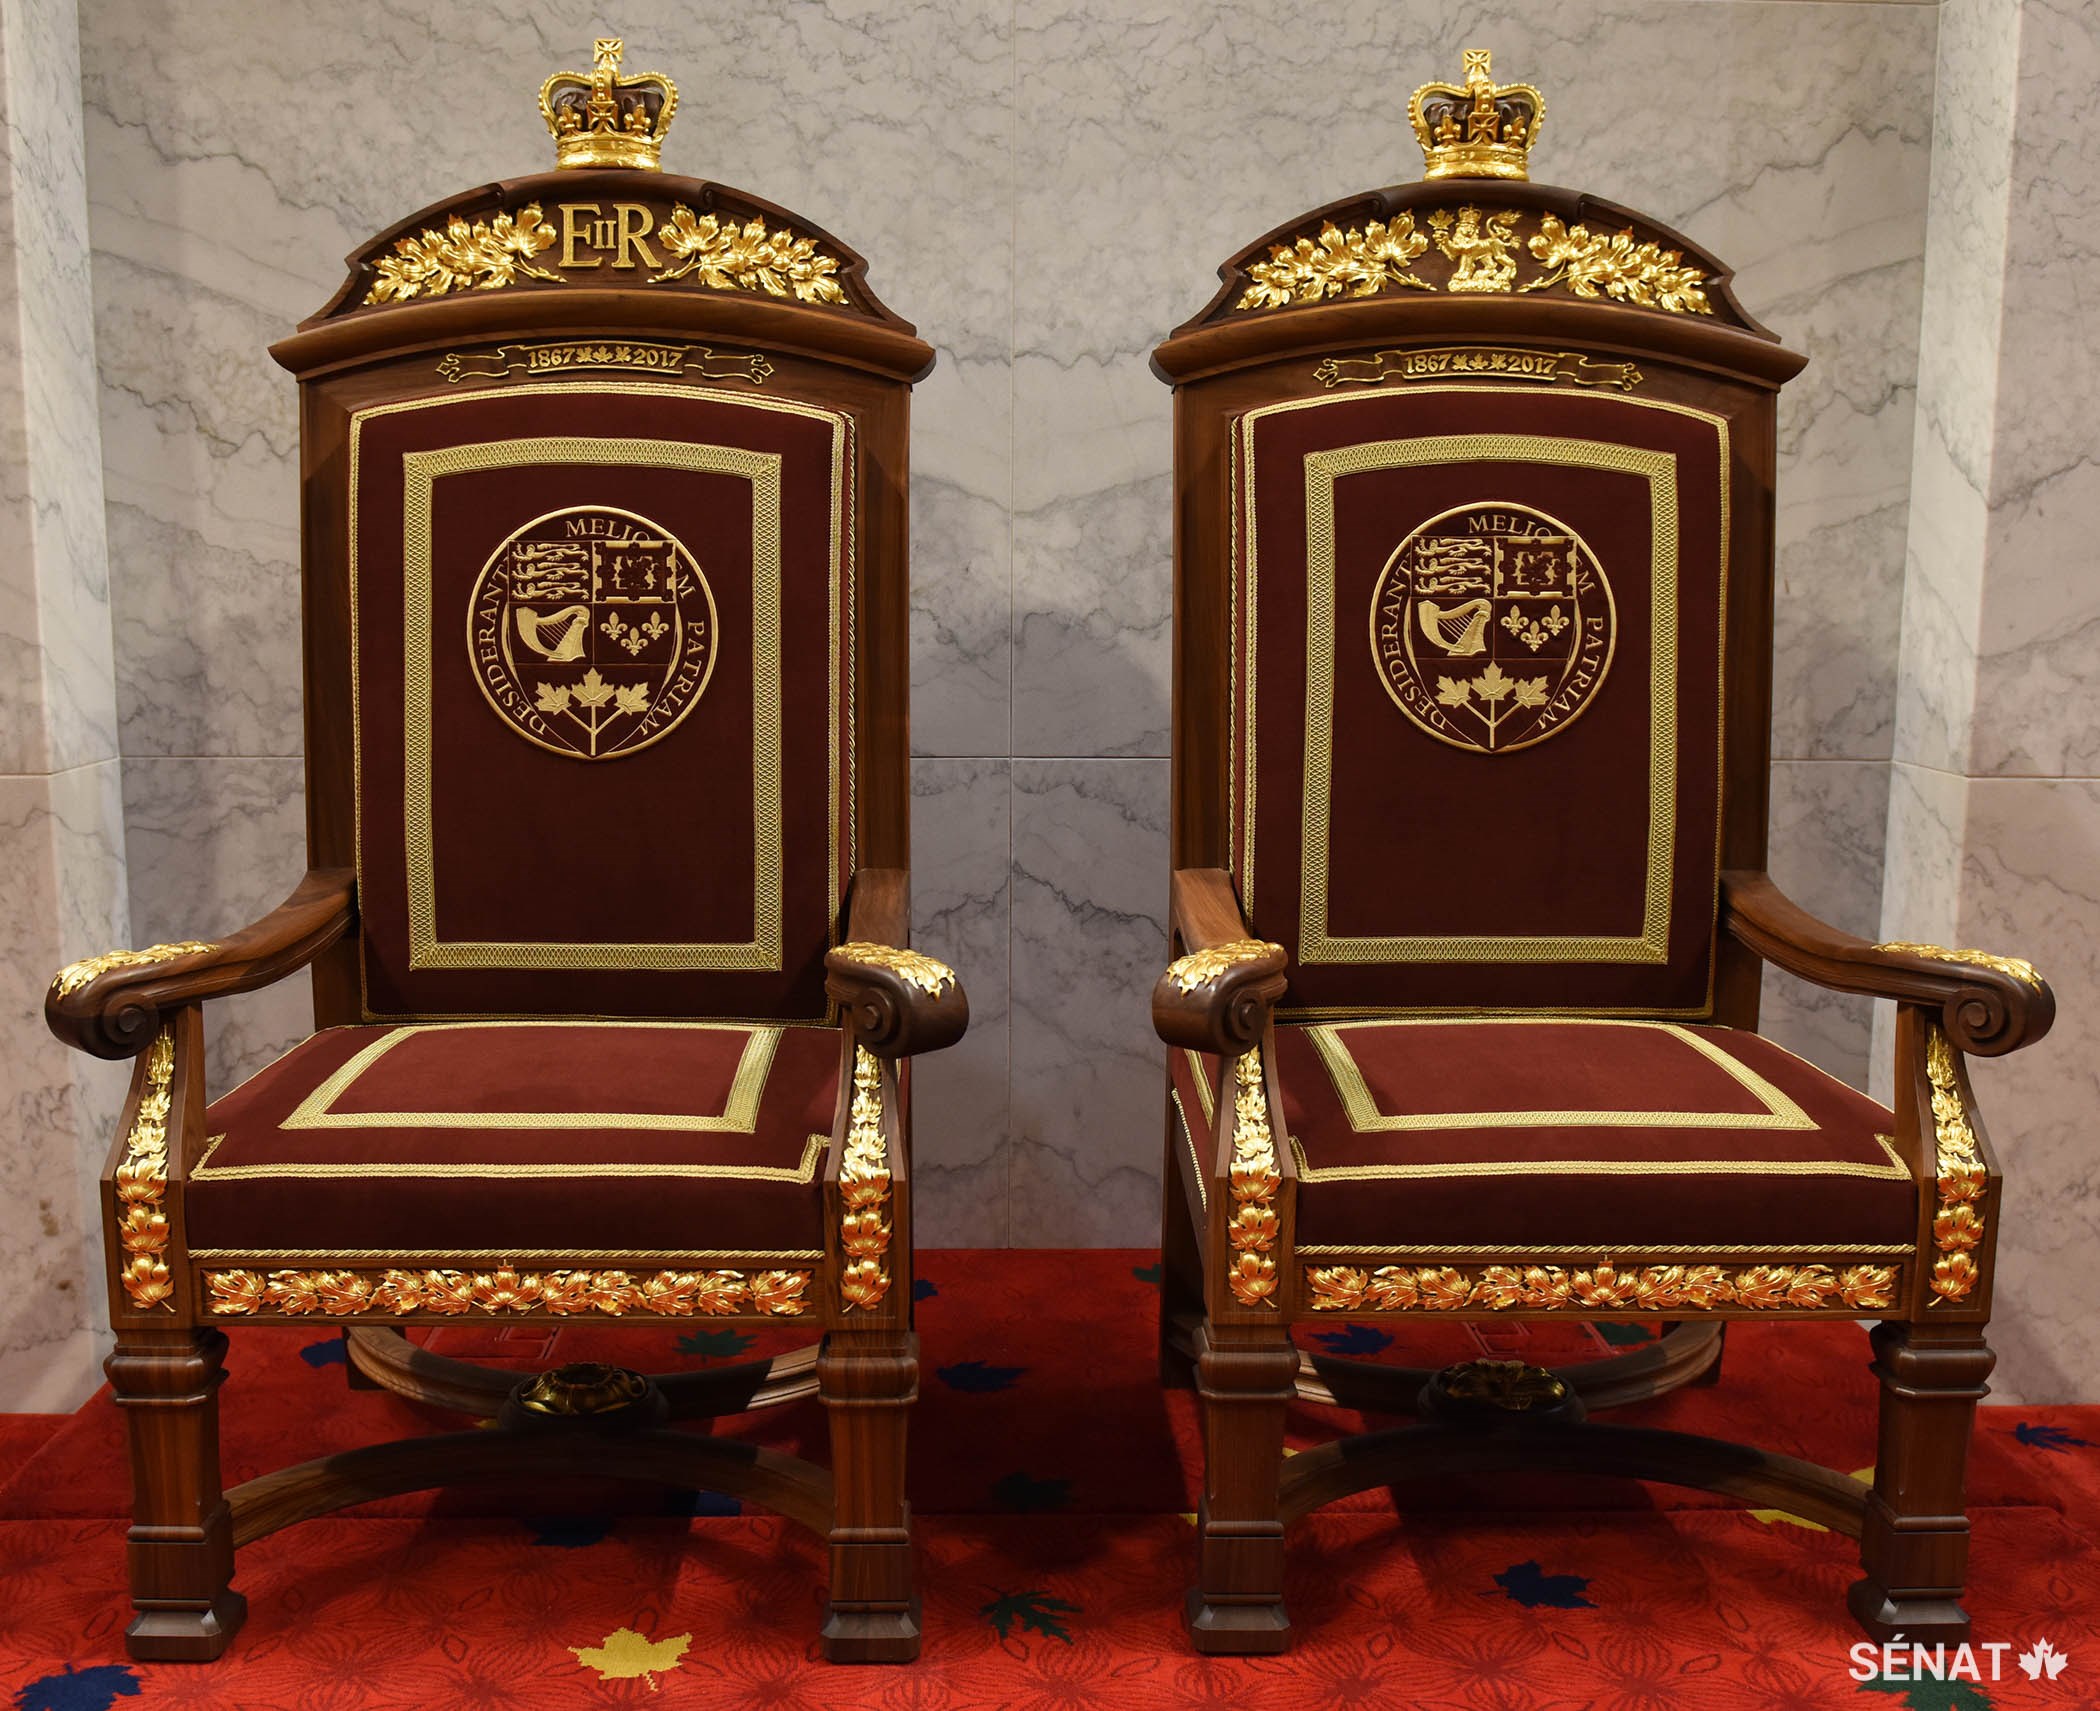 Les trônes ont été fabriqués à la main à Montréal par de talentueux ébénistes, rembourreurs, sculpteurs et finisseurs.